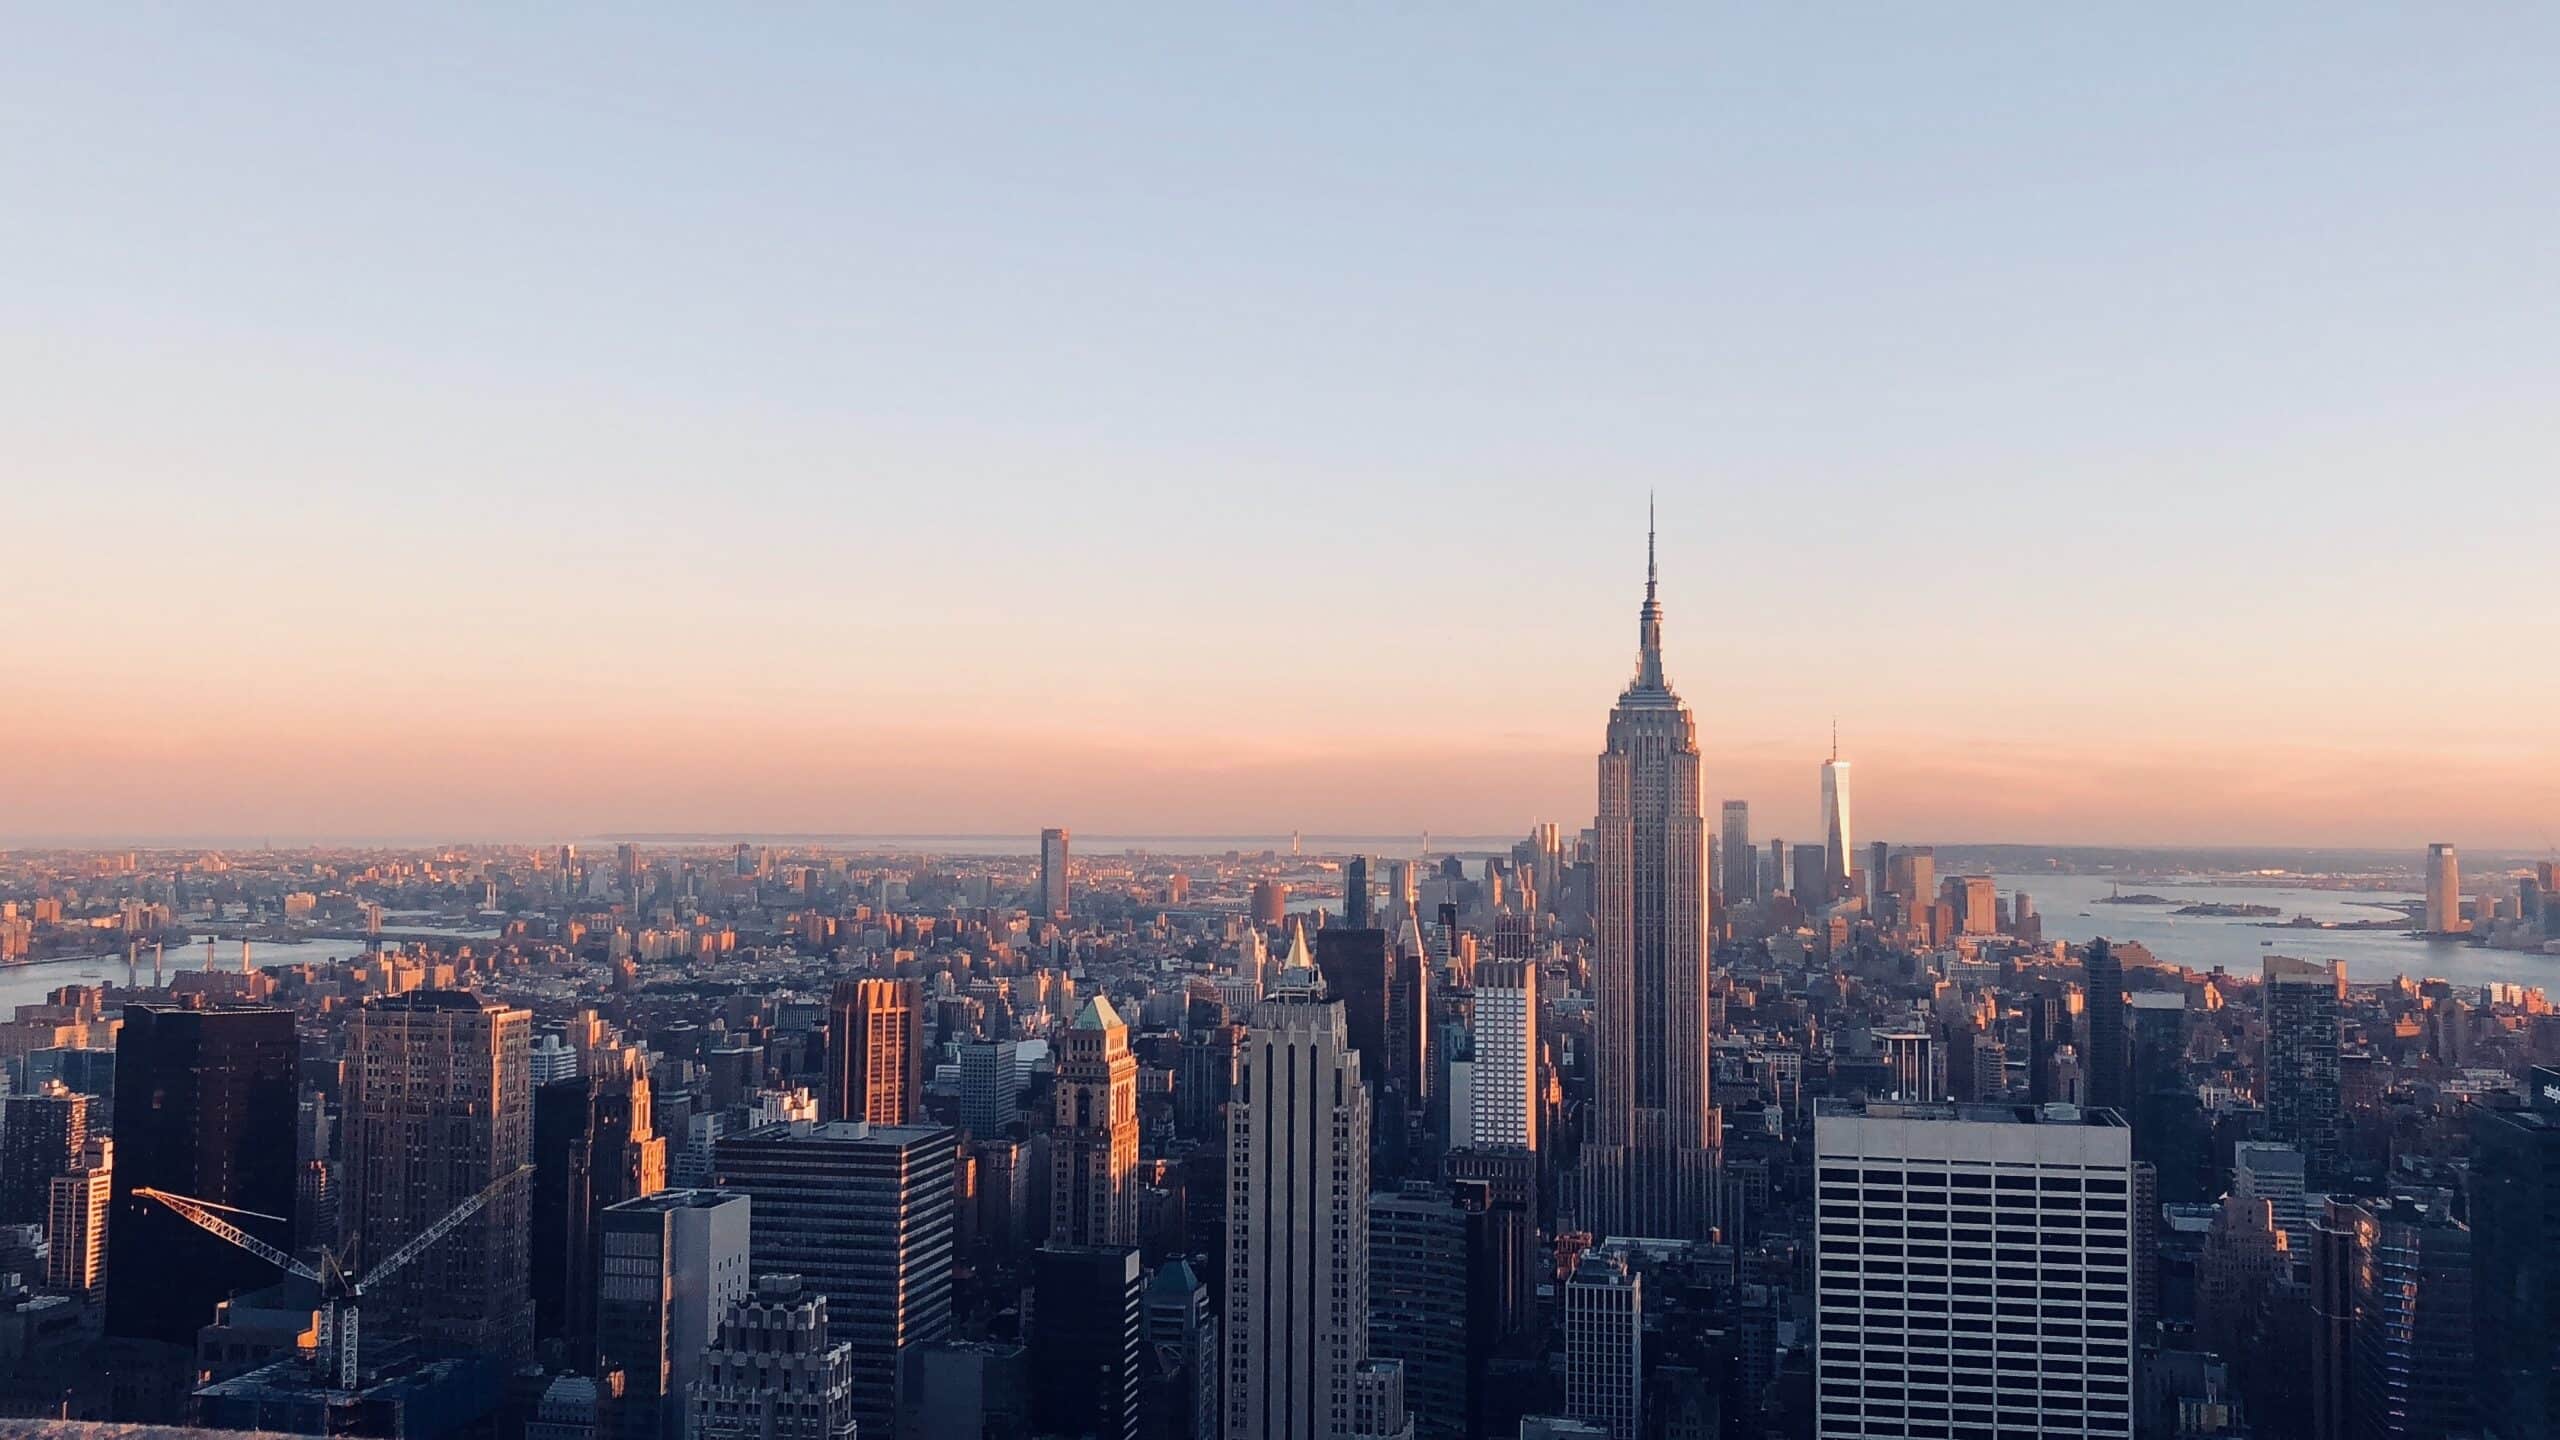 Vue panoramique de Manhattan prise depuis le Chrysler Building client d'Article Onze